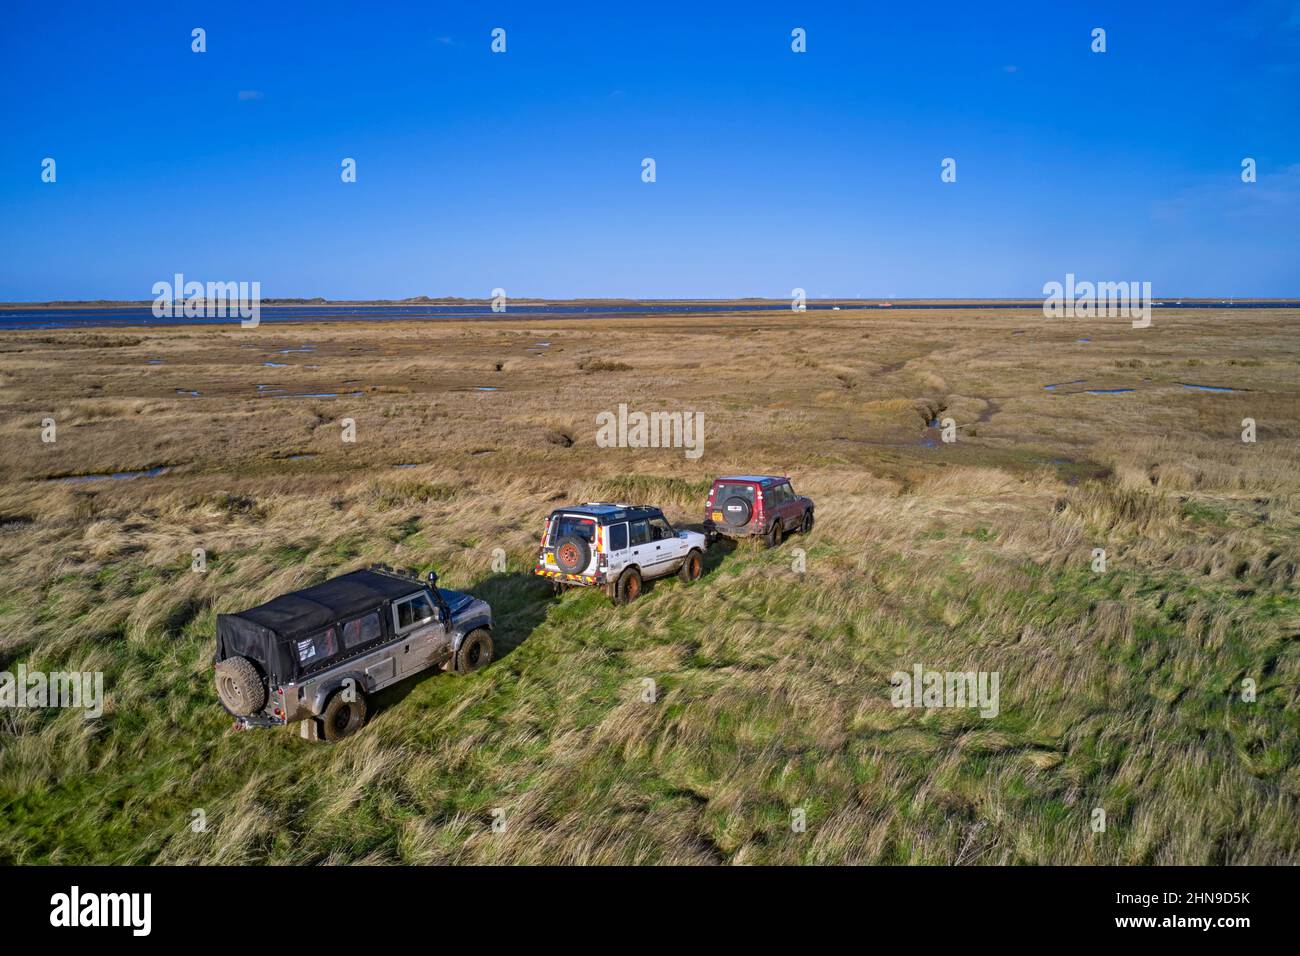 Les Land Rover s'arrêtent là où le passage se termine au bord des marais salants. Morston Greens, Norfolk, Angleterre. Banque D'Images